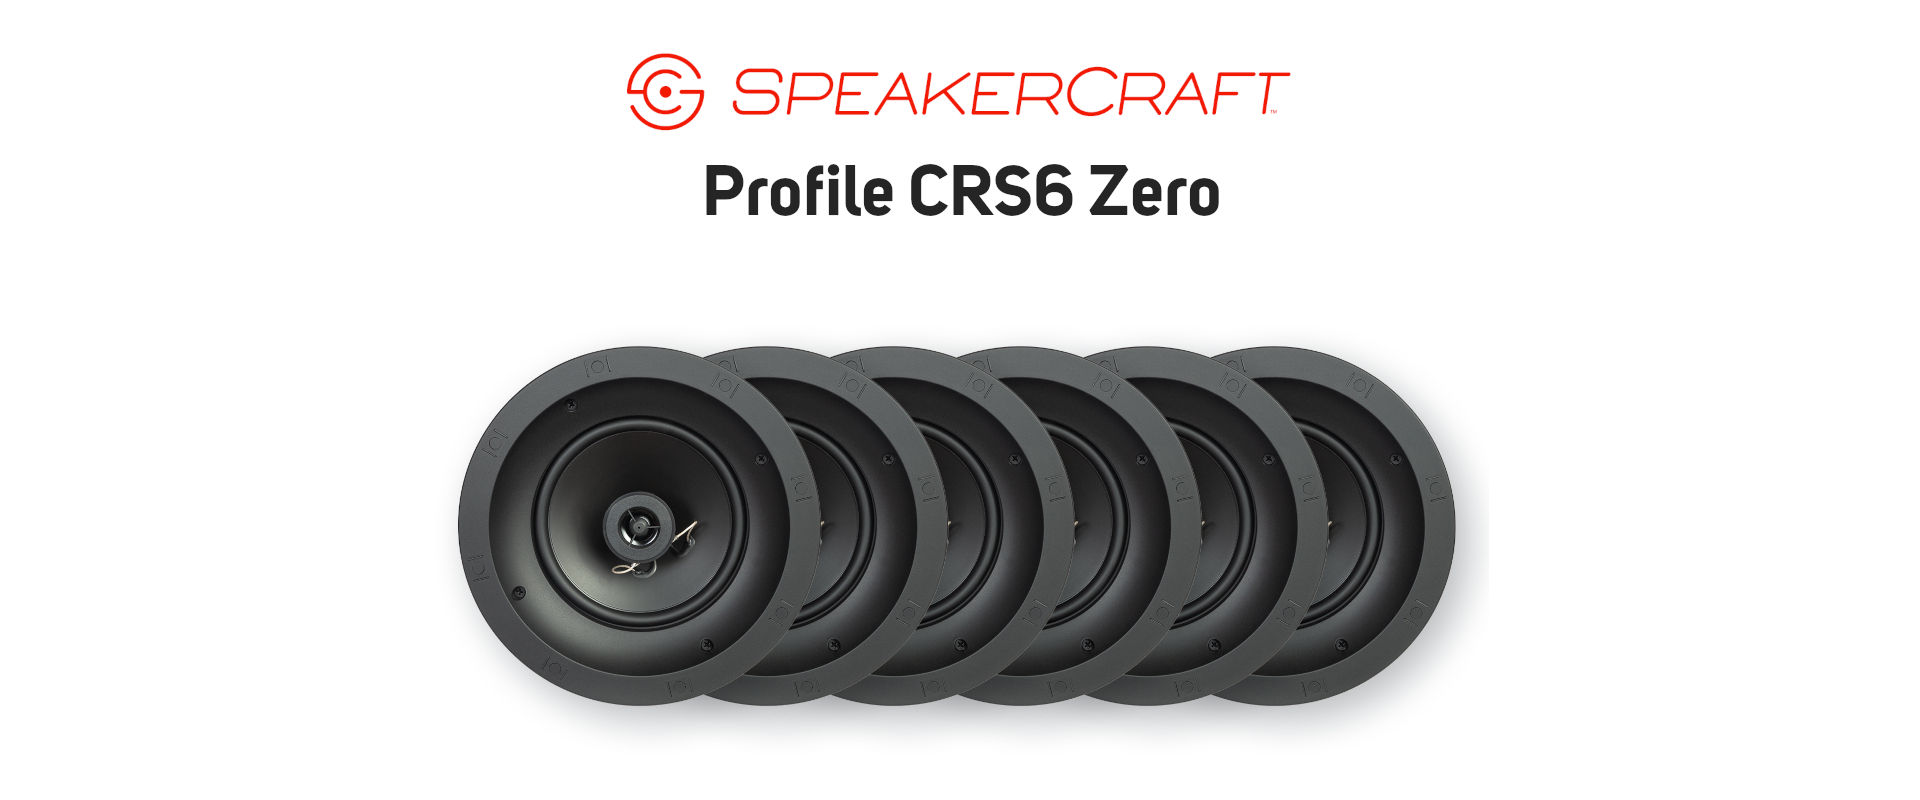 speakercraft profile crs6